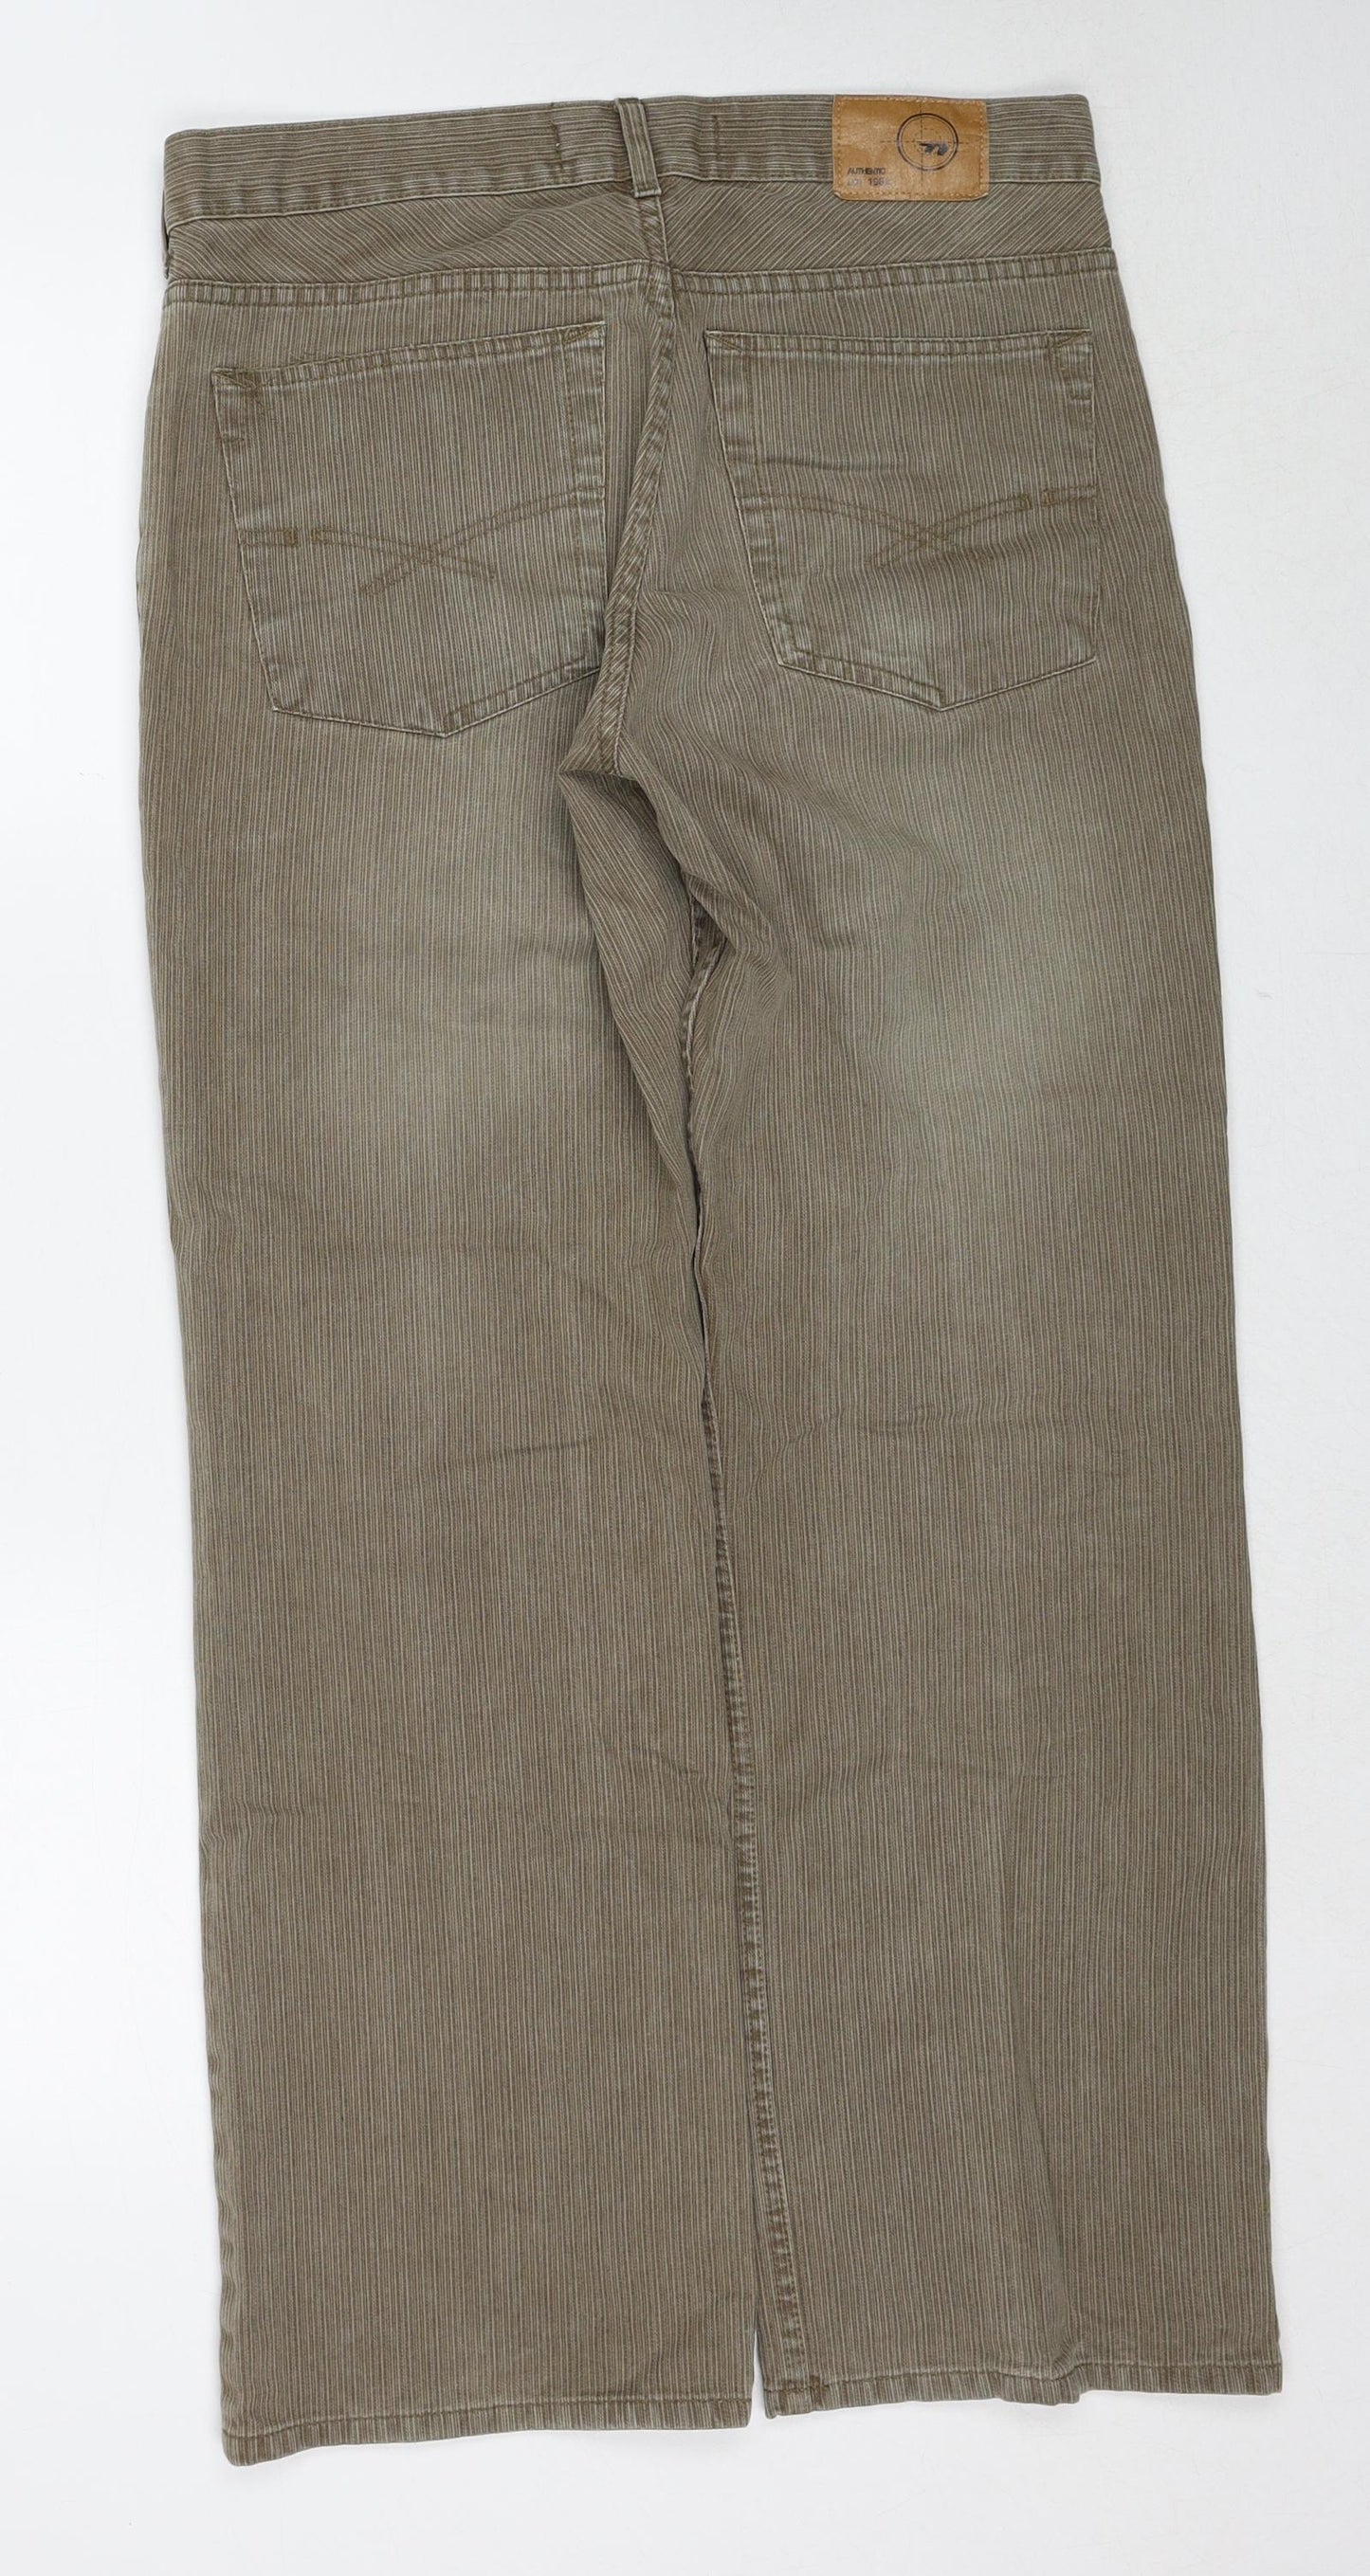 NEXT Mens Beige Cotton Straight Jeans Size 34 in Regular Zip